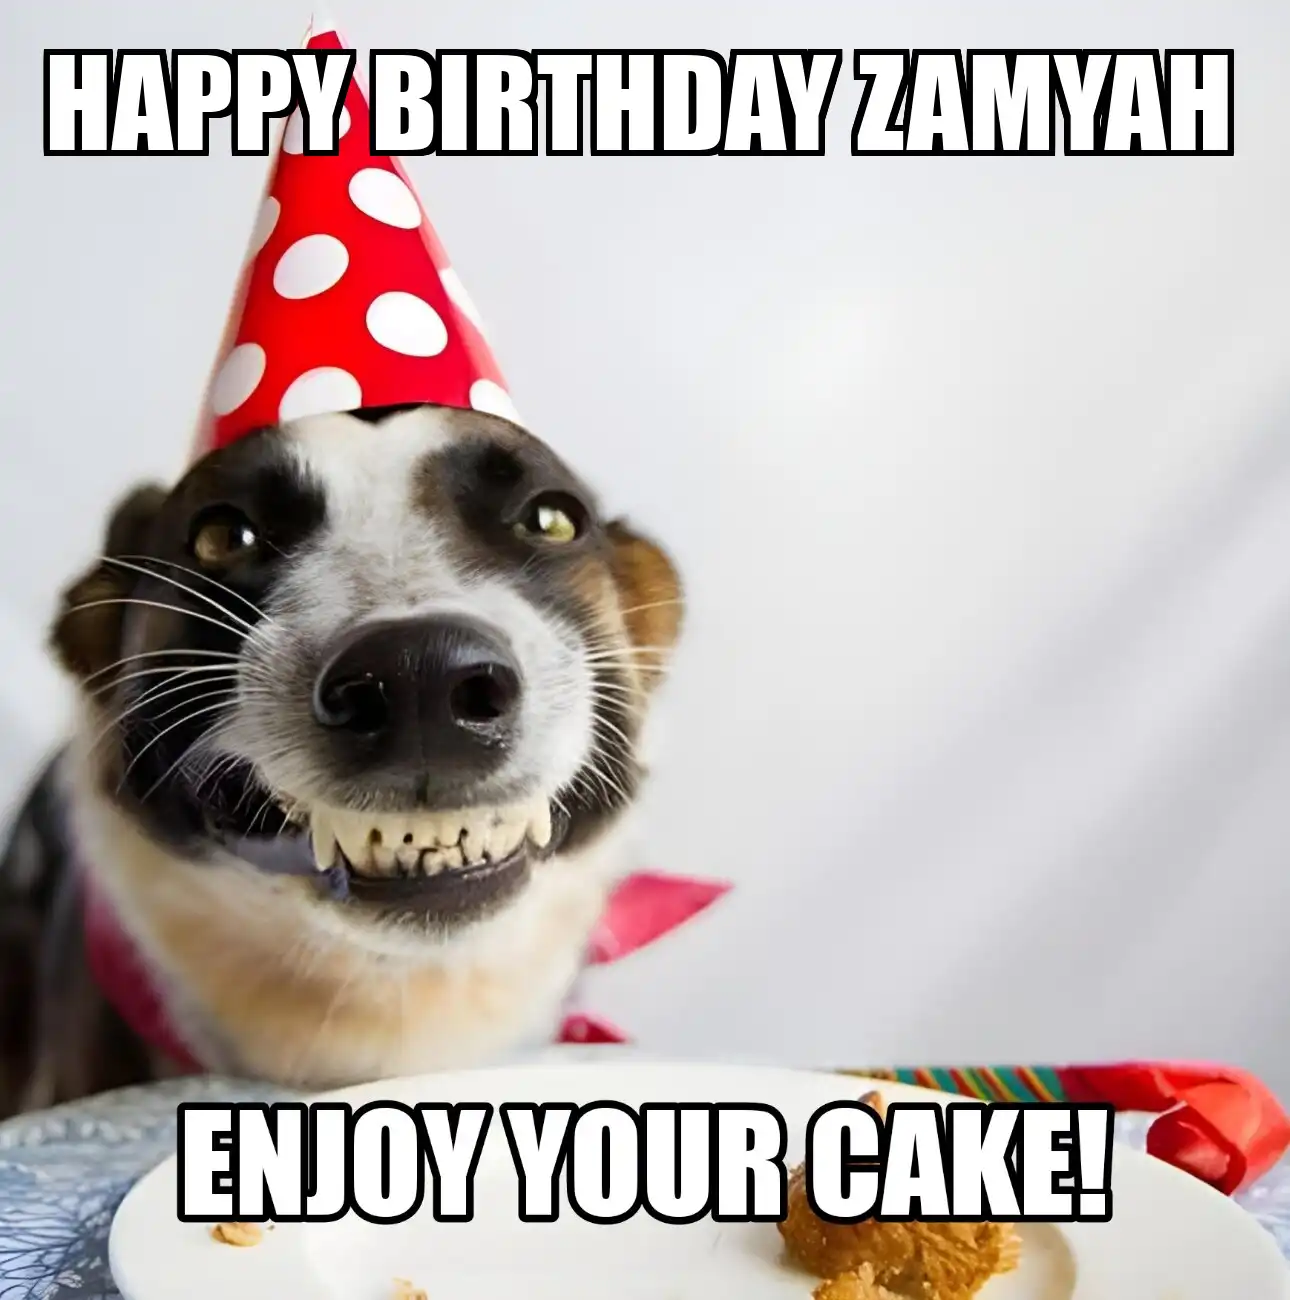 Happy Birthday Zamyah Enjoy Your Cake Dog Meme